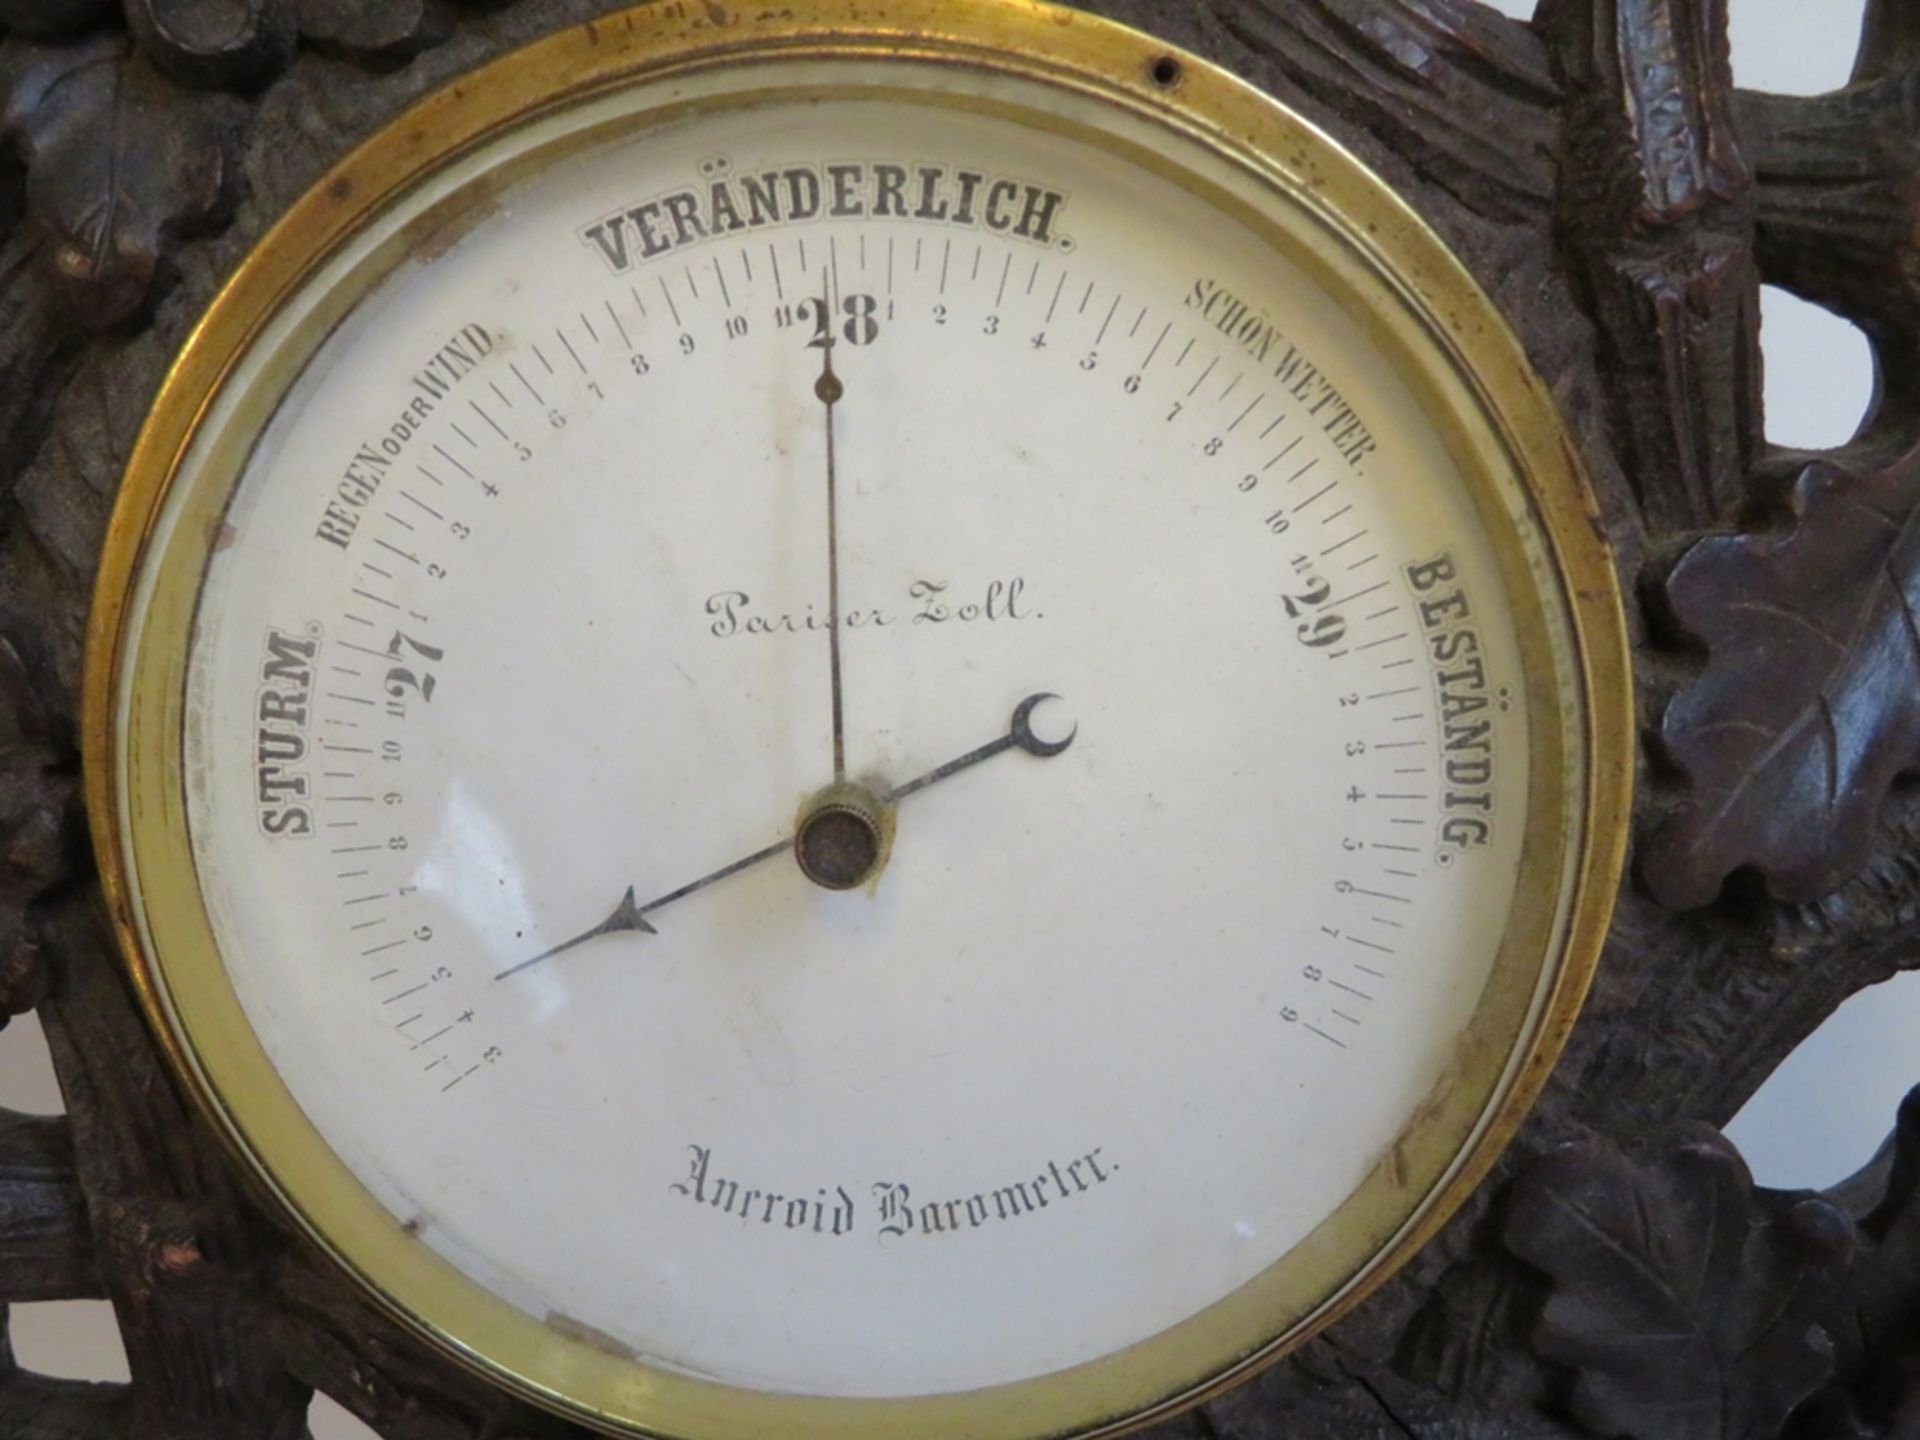 Aneroidbarometer, Schwarzwald, 19. Jahrhundert, Weichholz mit Eichenlaub und Eicheln geschnitzt, 58 - Image 2 of 2